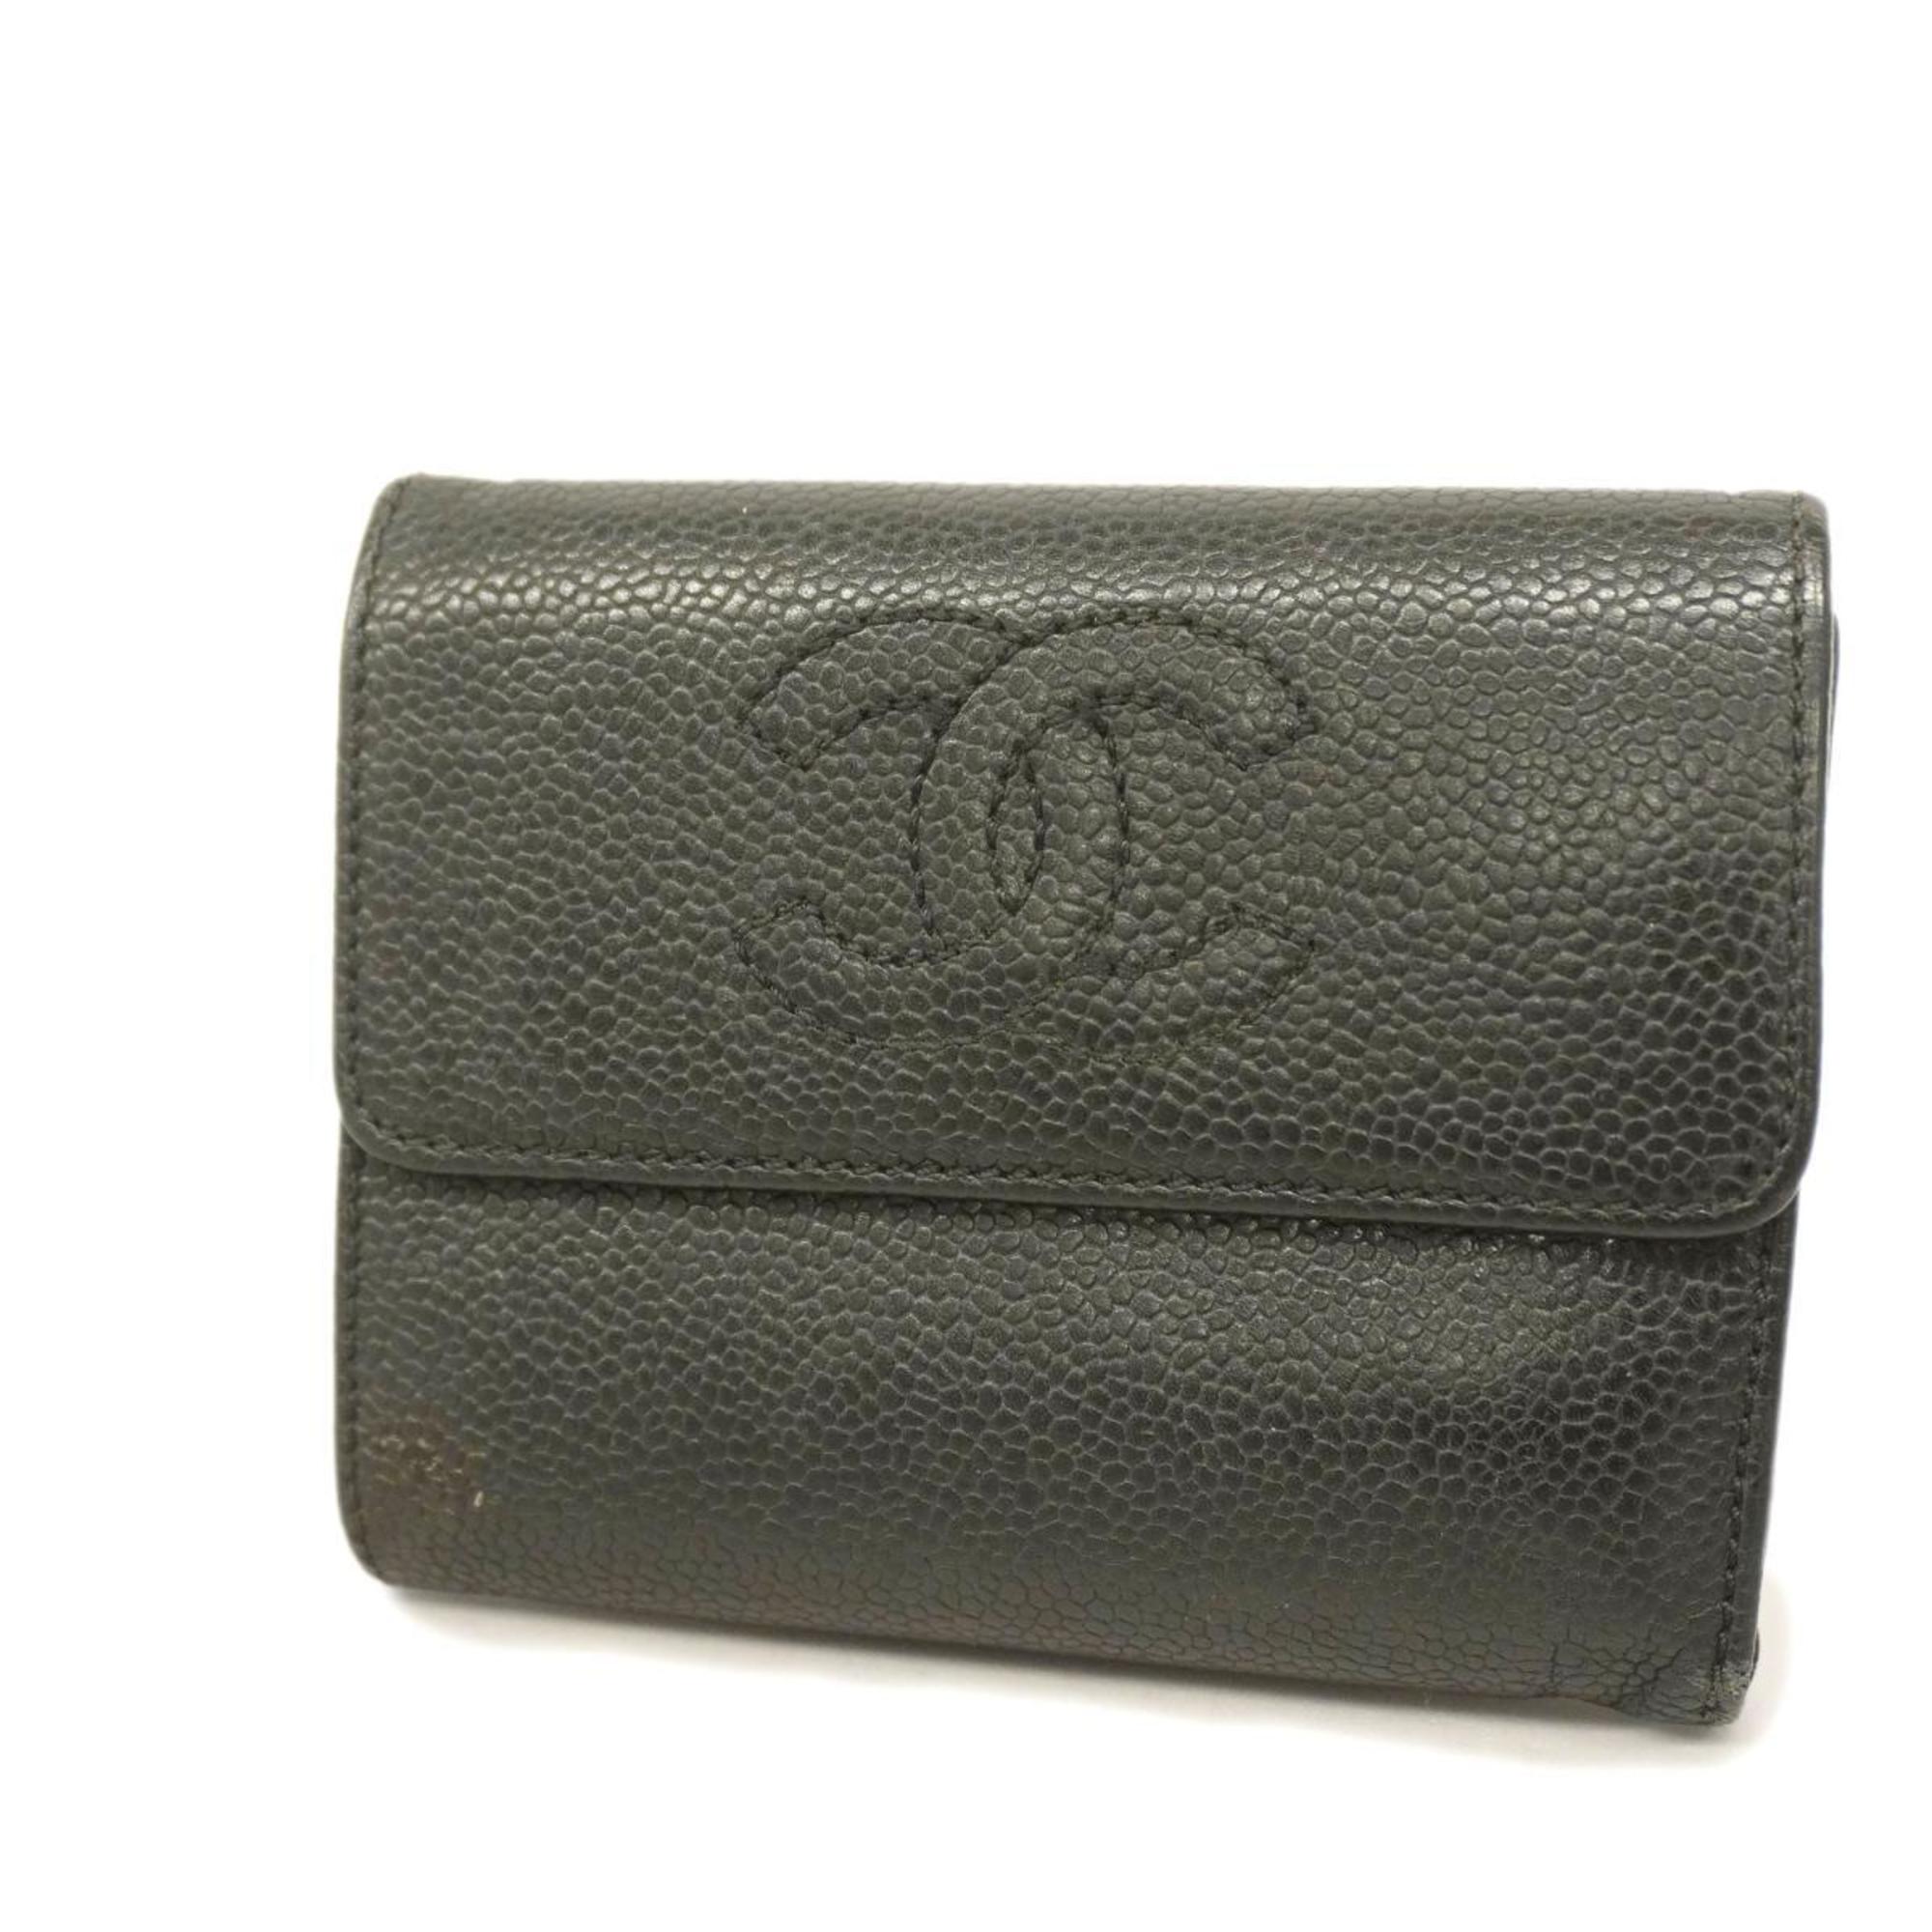 シャネル(Chanel) シャネル 三つ折り財布 キャビアスキン ブラック ...CCマーク